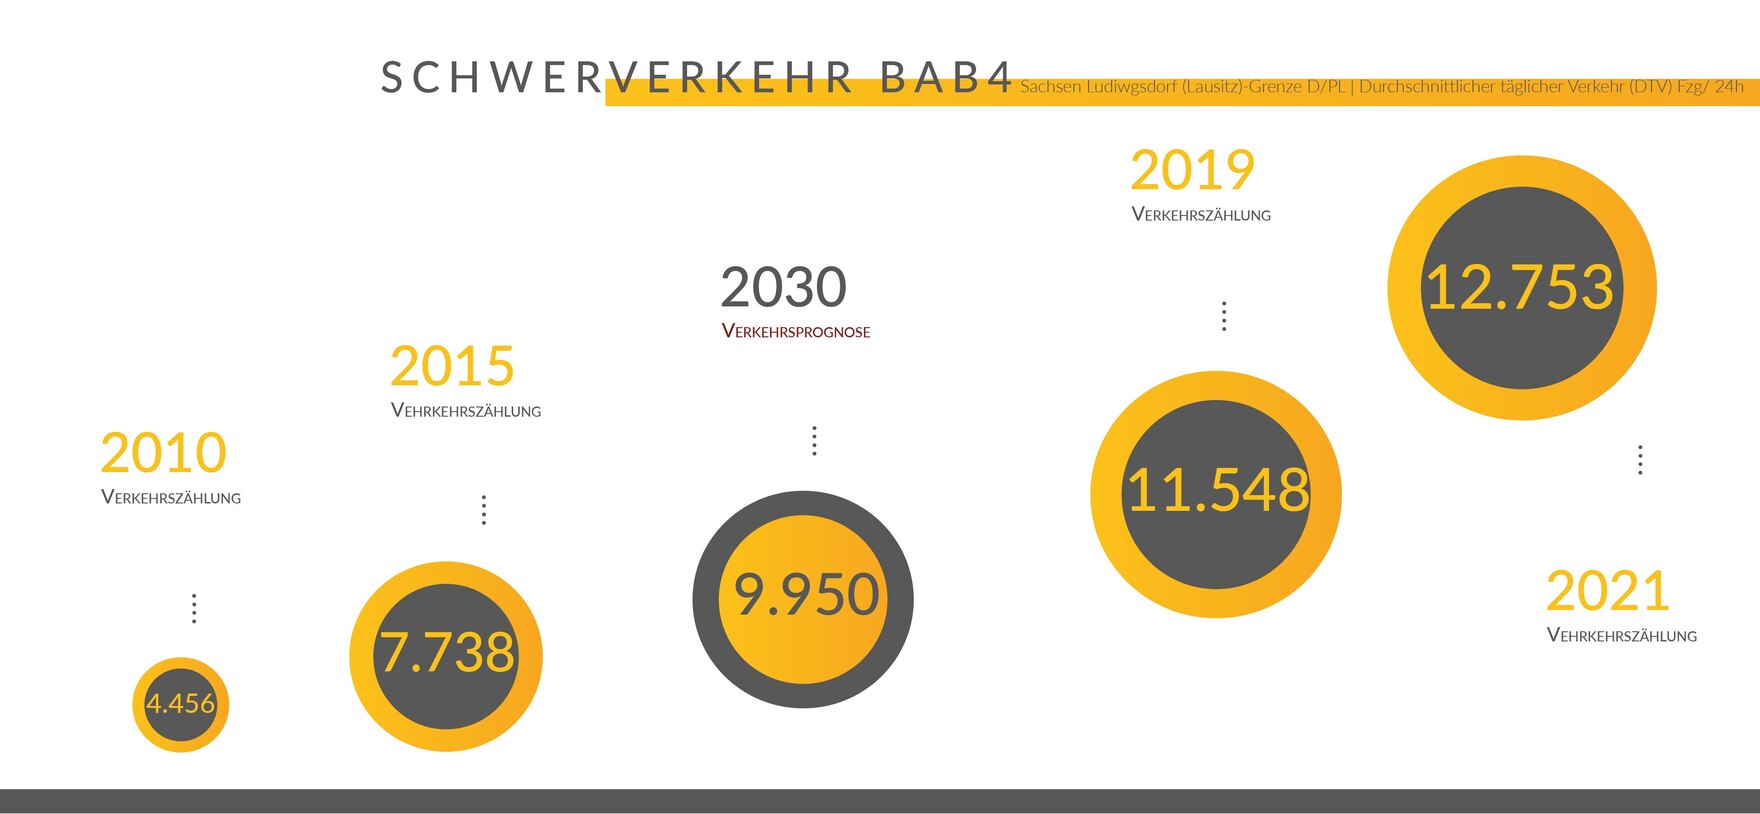 Darstellung der Entwicklung vom Schwerverkehr am Grenzübergang Ludwigsdorf von 2010 bis 2030